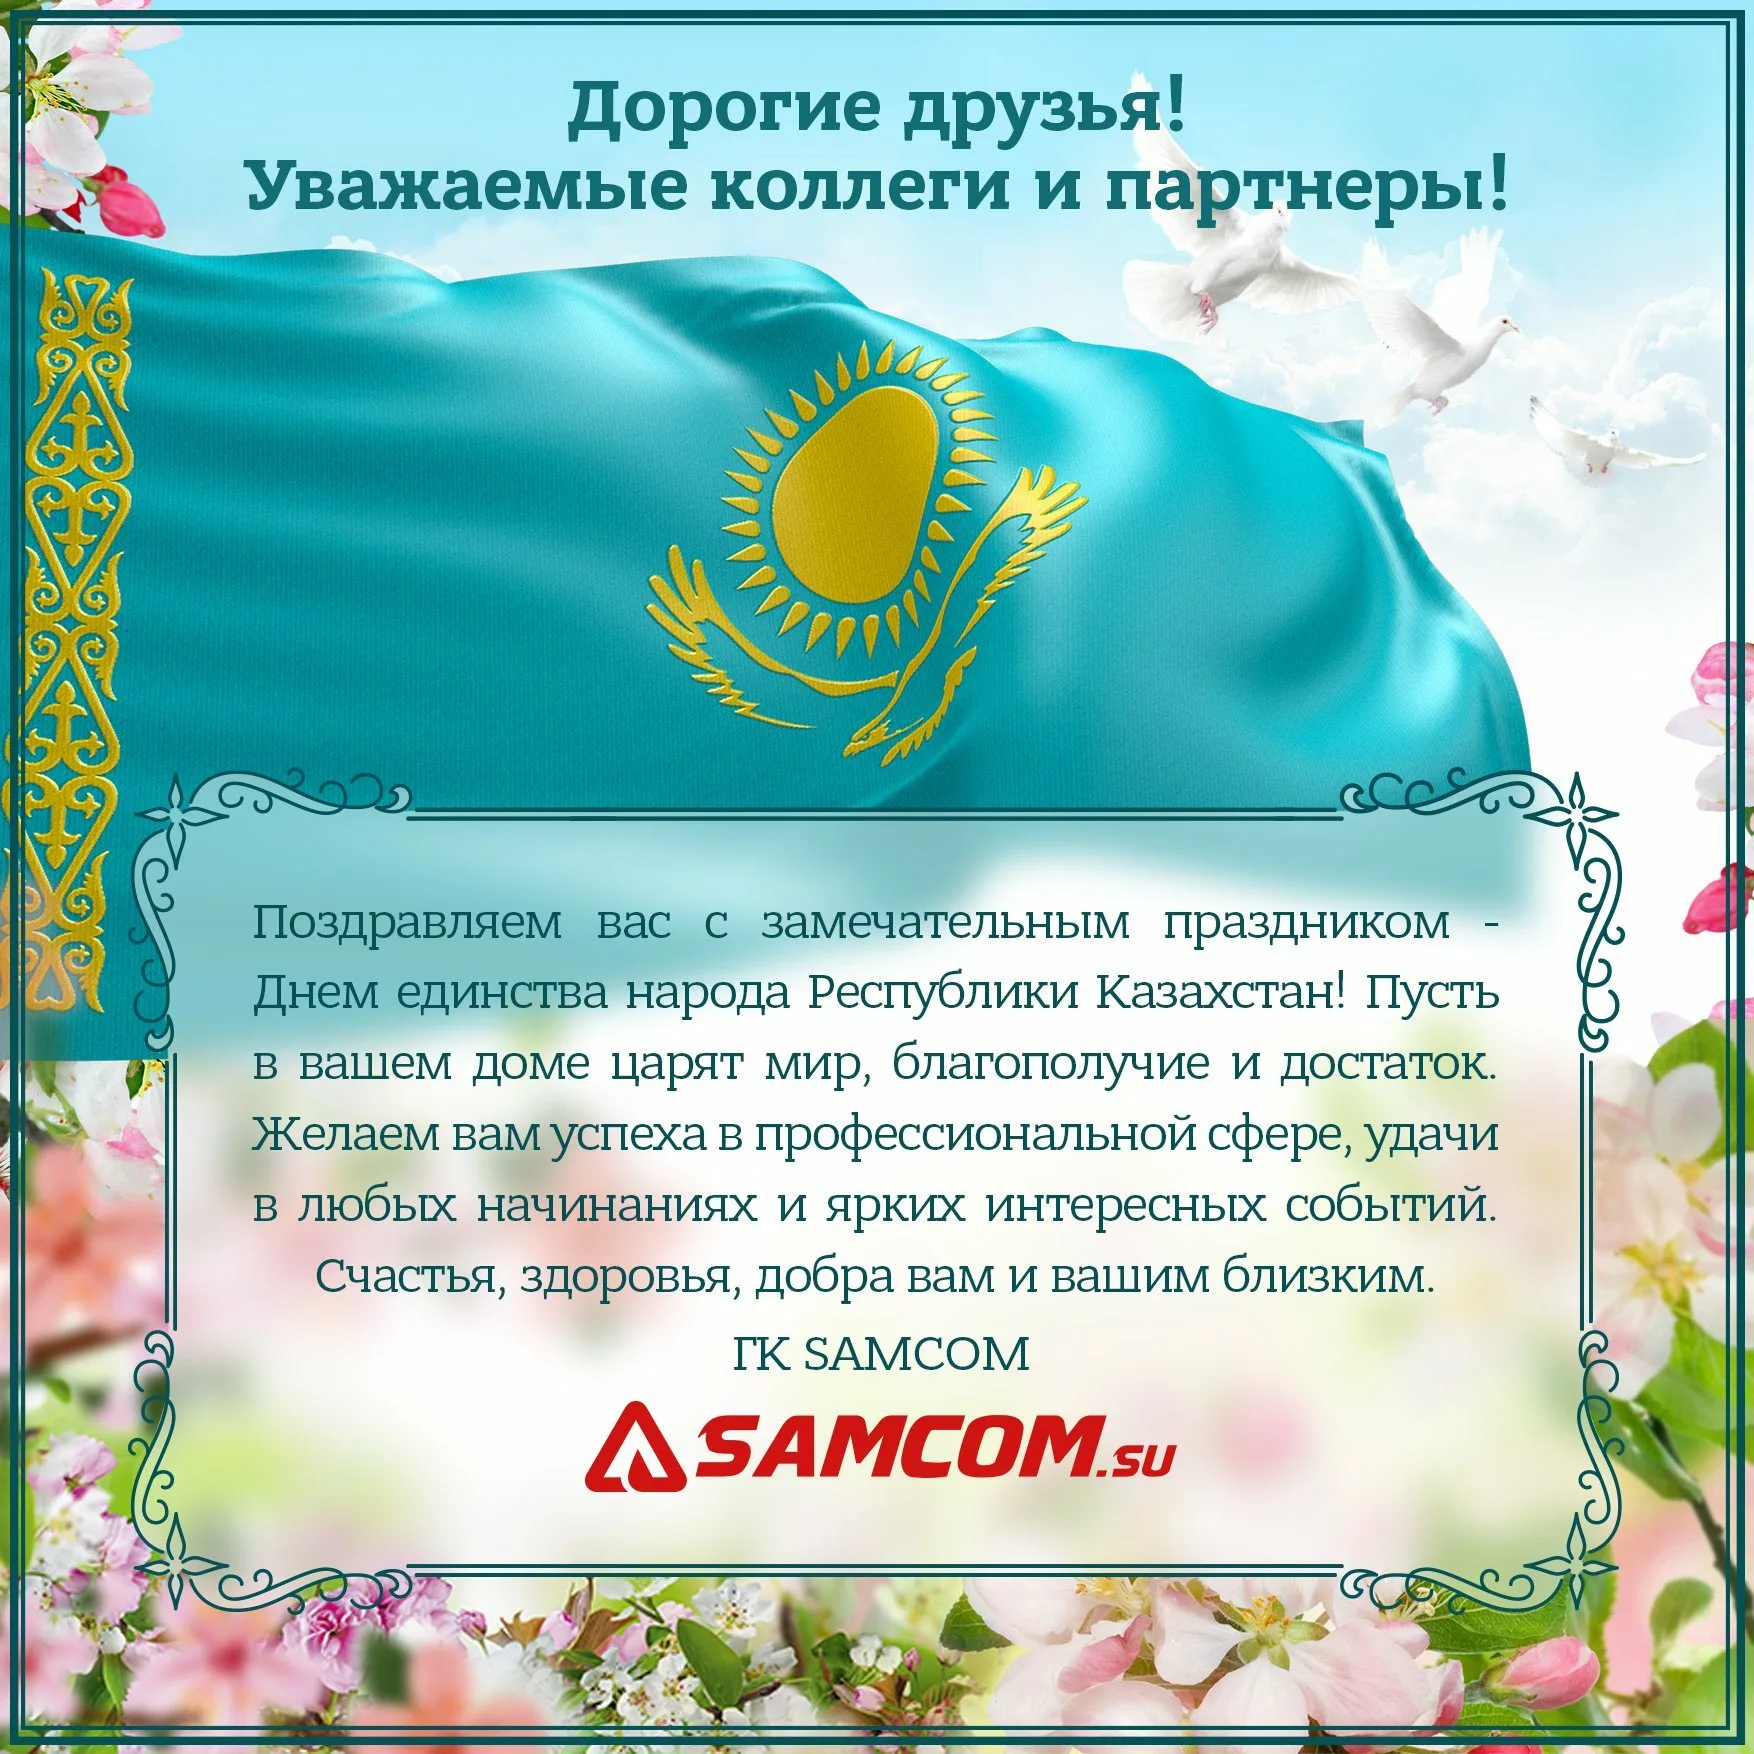 Фото Поздравления с Днем защитника в Казахстане на казахском языке с переводом #45